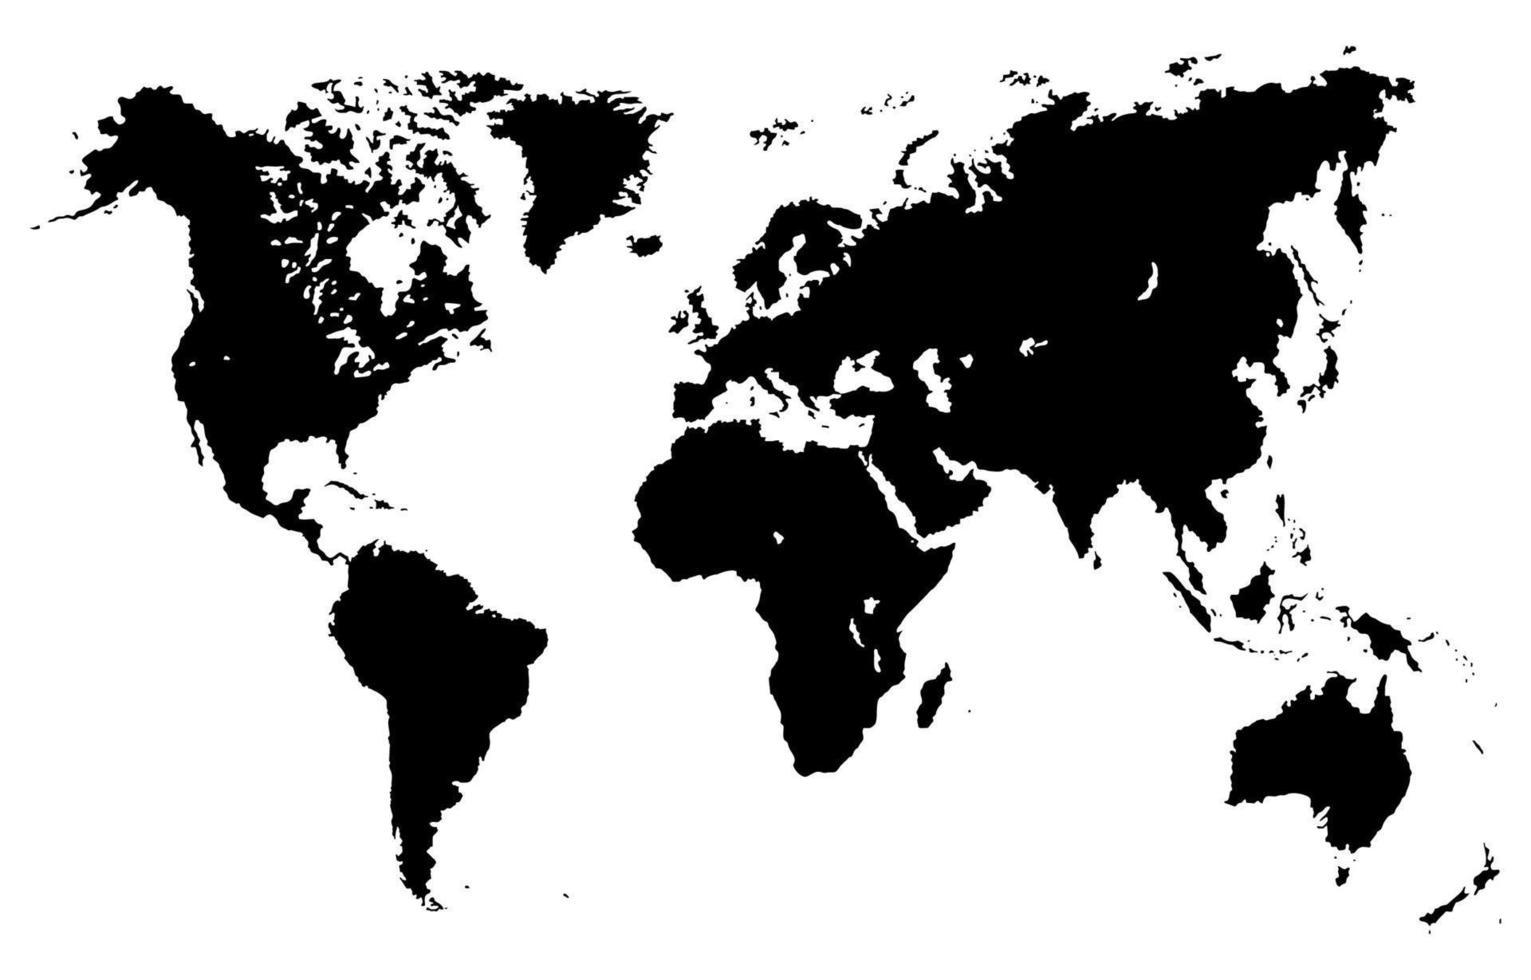 Schwarz-Weiß-Weltkartenhintergrund vektor